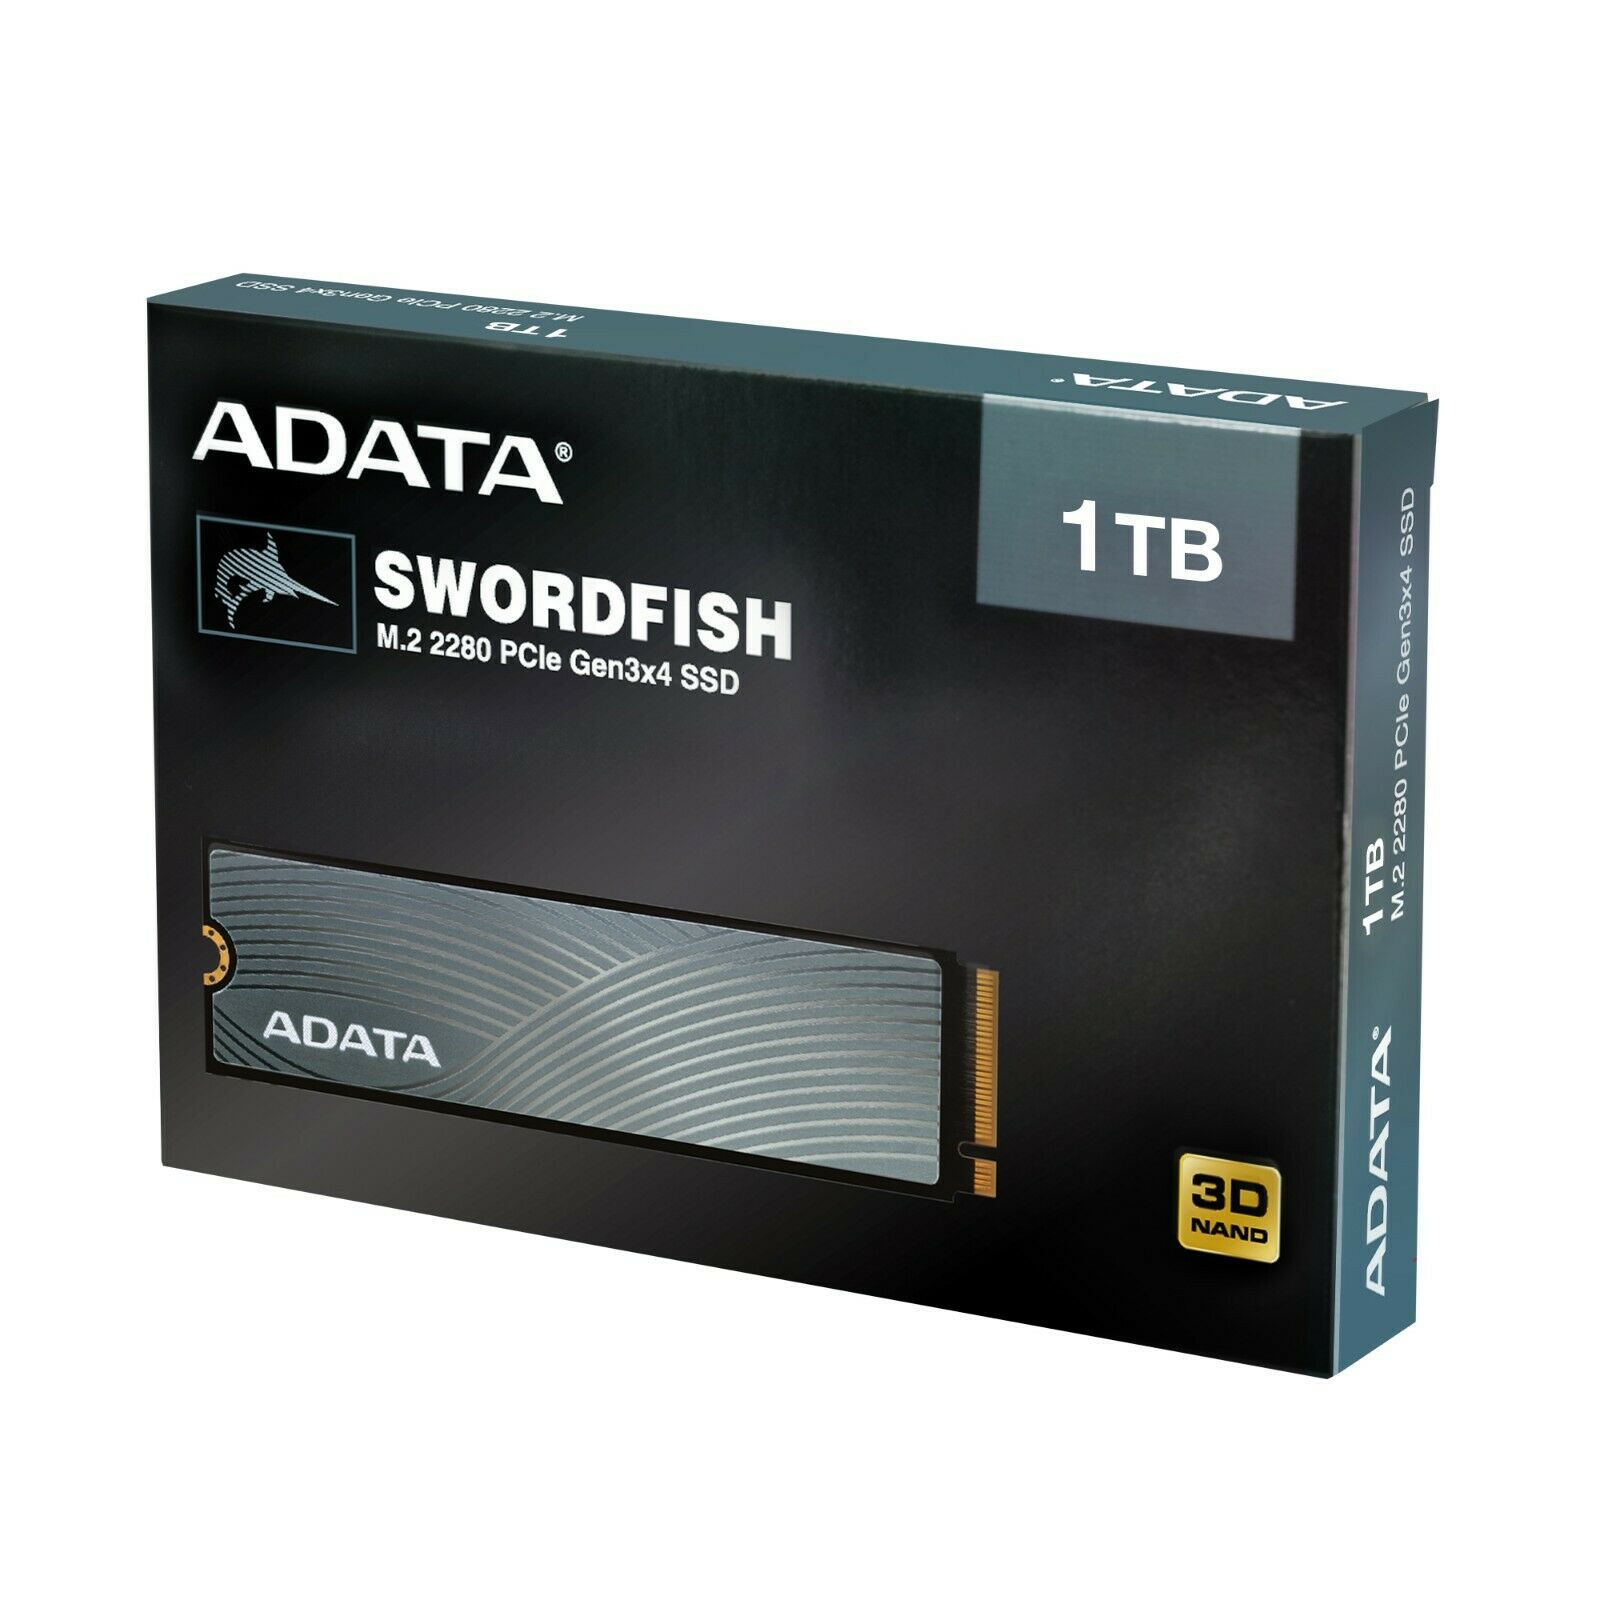 Adata Swordfish Pcie Nvme Gen3x4 M.2 2280 Solid State Drive 500gb/1tb/2tb